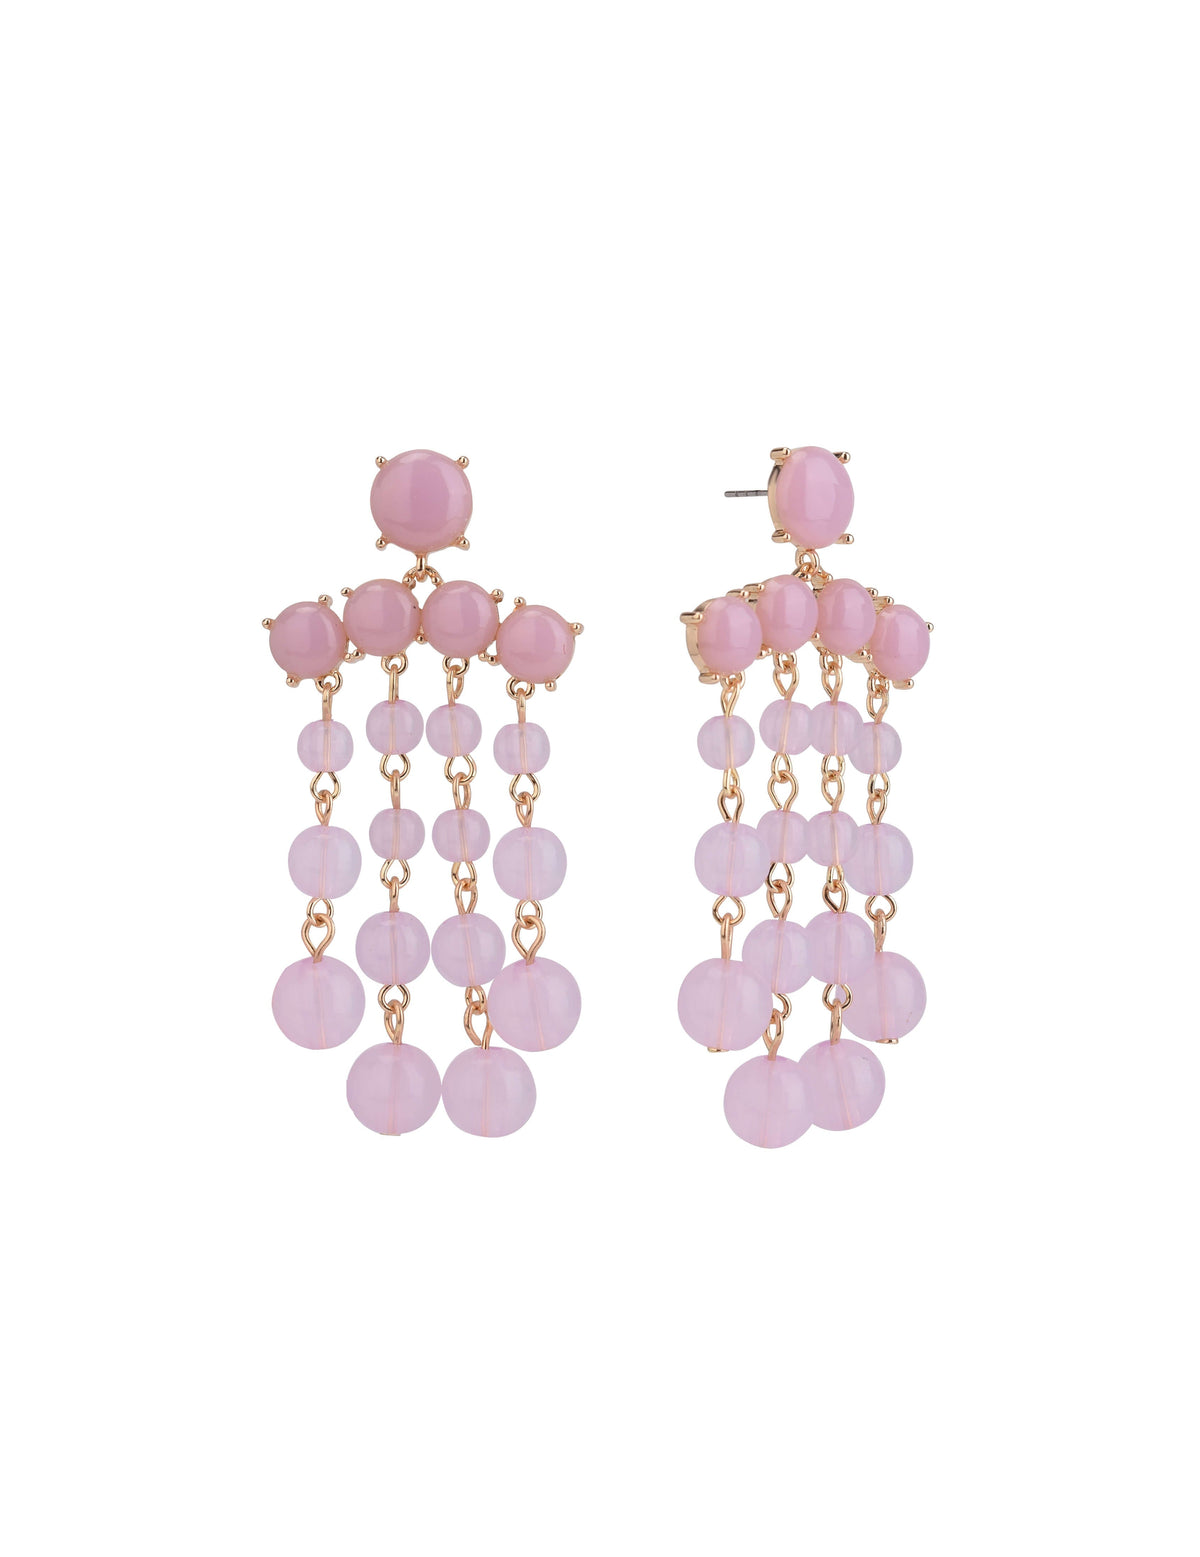 Pink Bead Chandelier Earrings